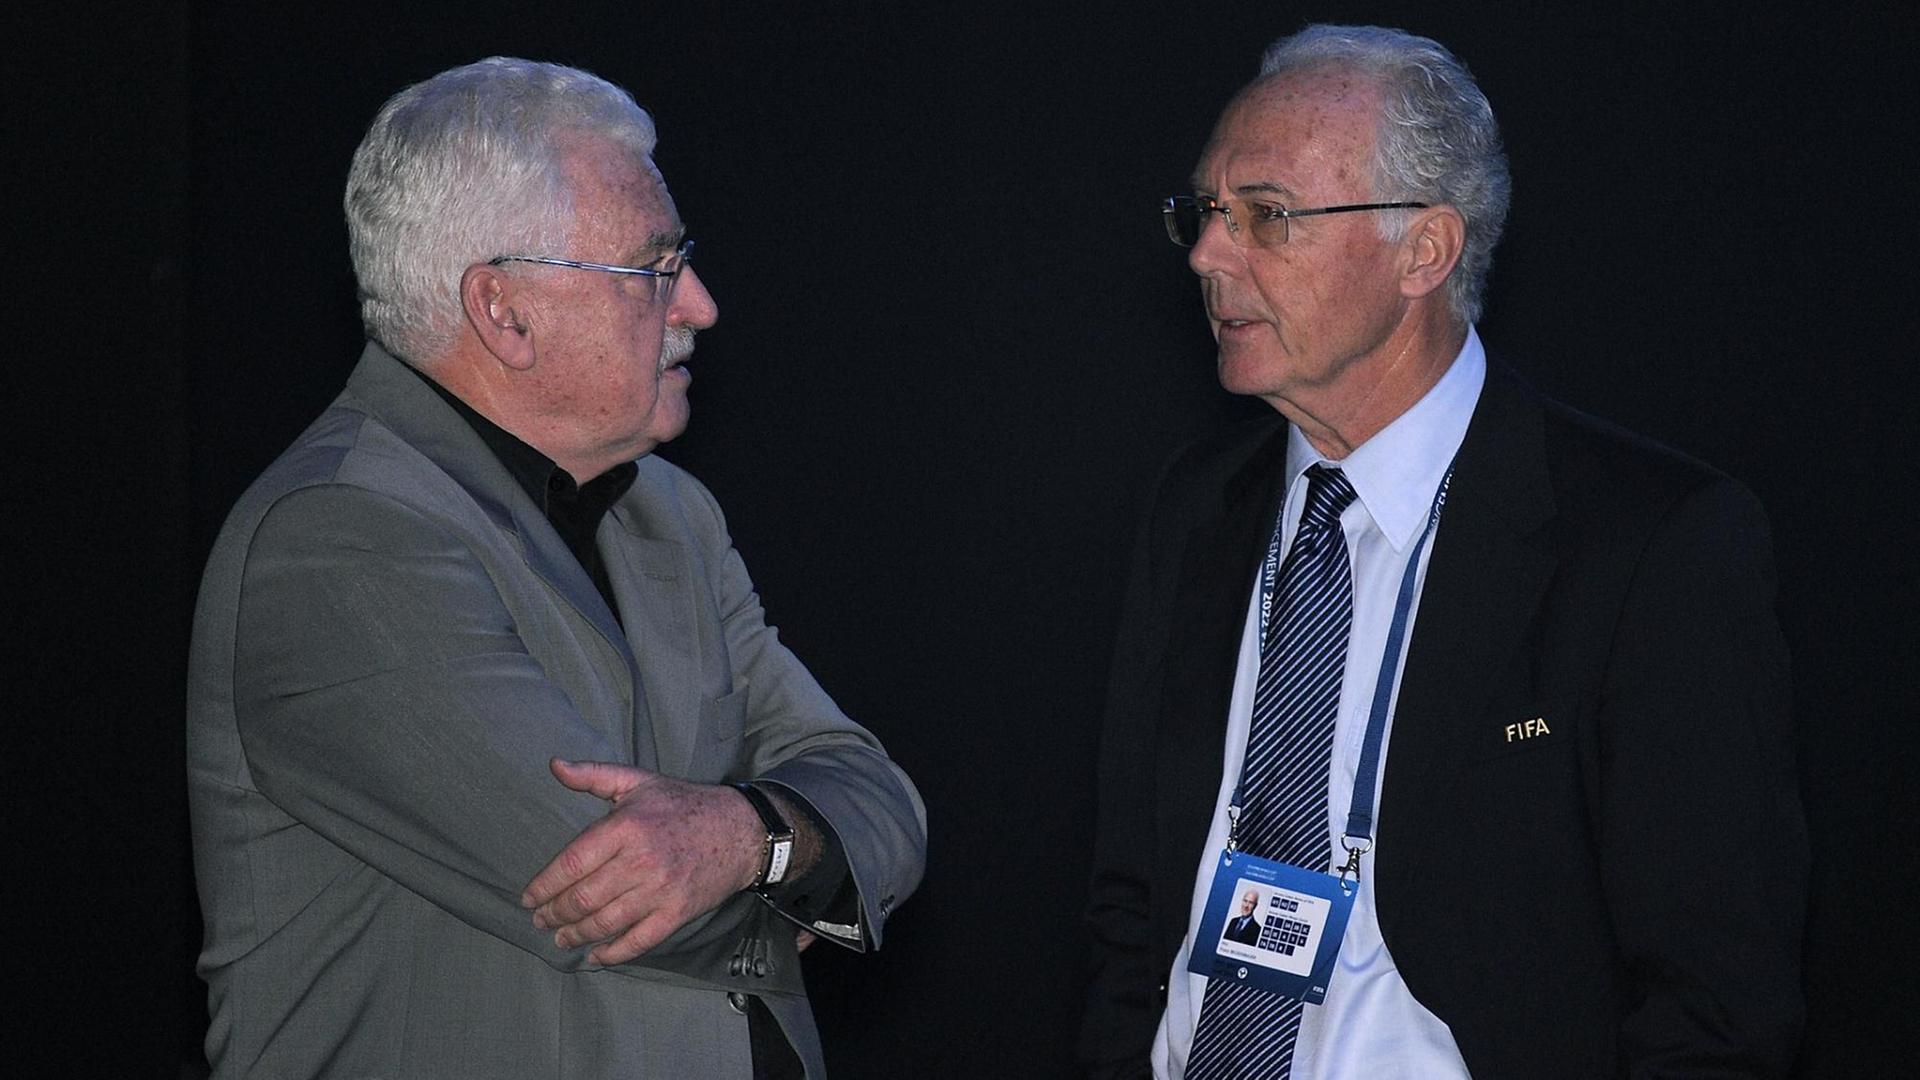 FIFA Exekutiv-Mitglied Franz Beckenbauer (links im Bild) und Fedor Radmann während der Sitzung des FIFA-Exekutivkomitees zur Vergabe der Weltmeisterschaften 2018 und 2022 am 2. Dezember 2010